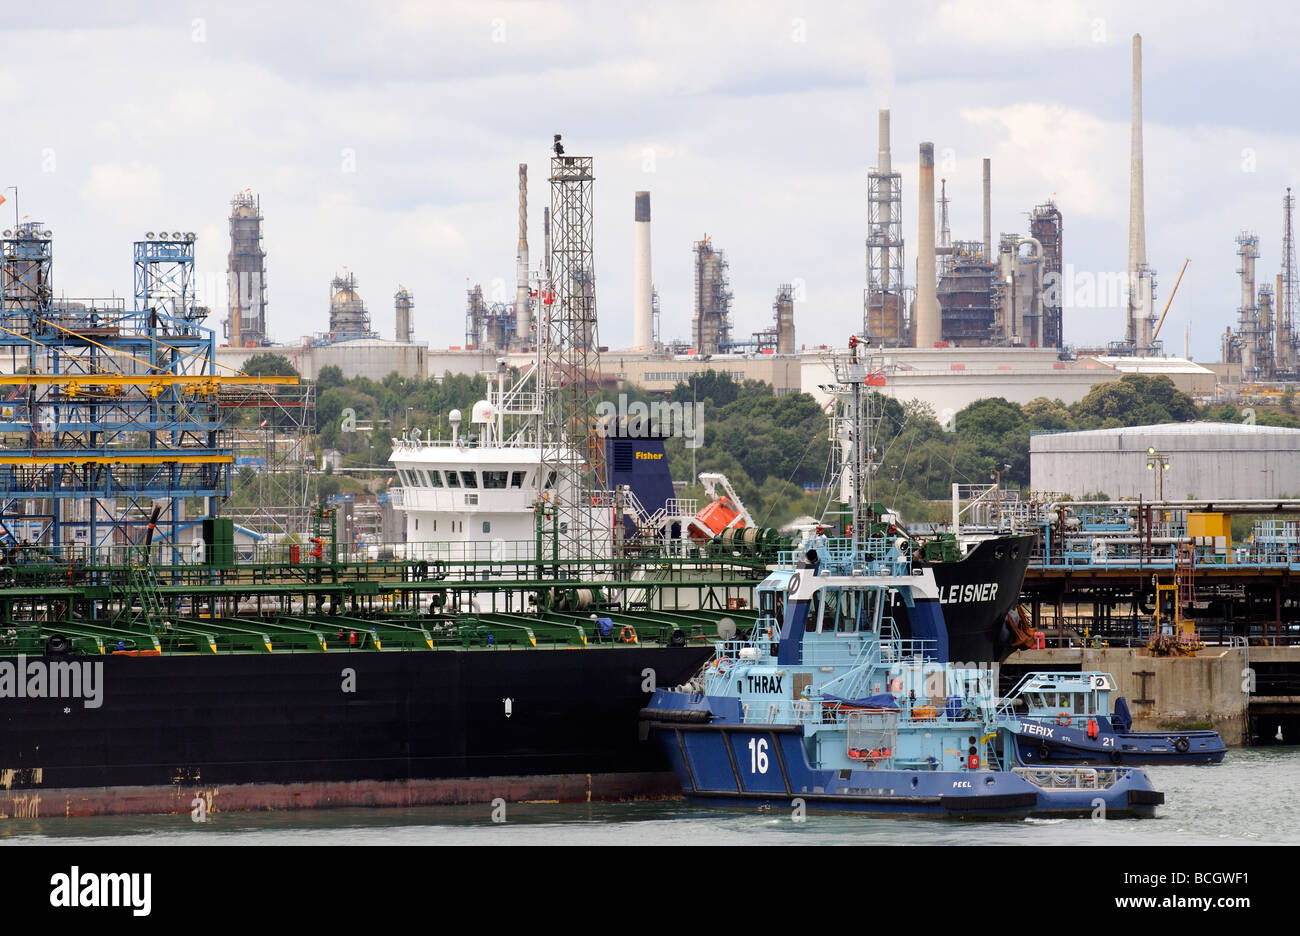 Marine Terminal Fawley Southampton England UK Schlepper der Öltanker T C Gleisner durch Andocken in Position verschoben wird Stockfoto